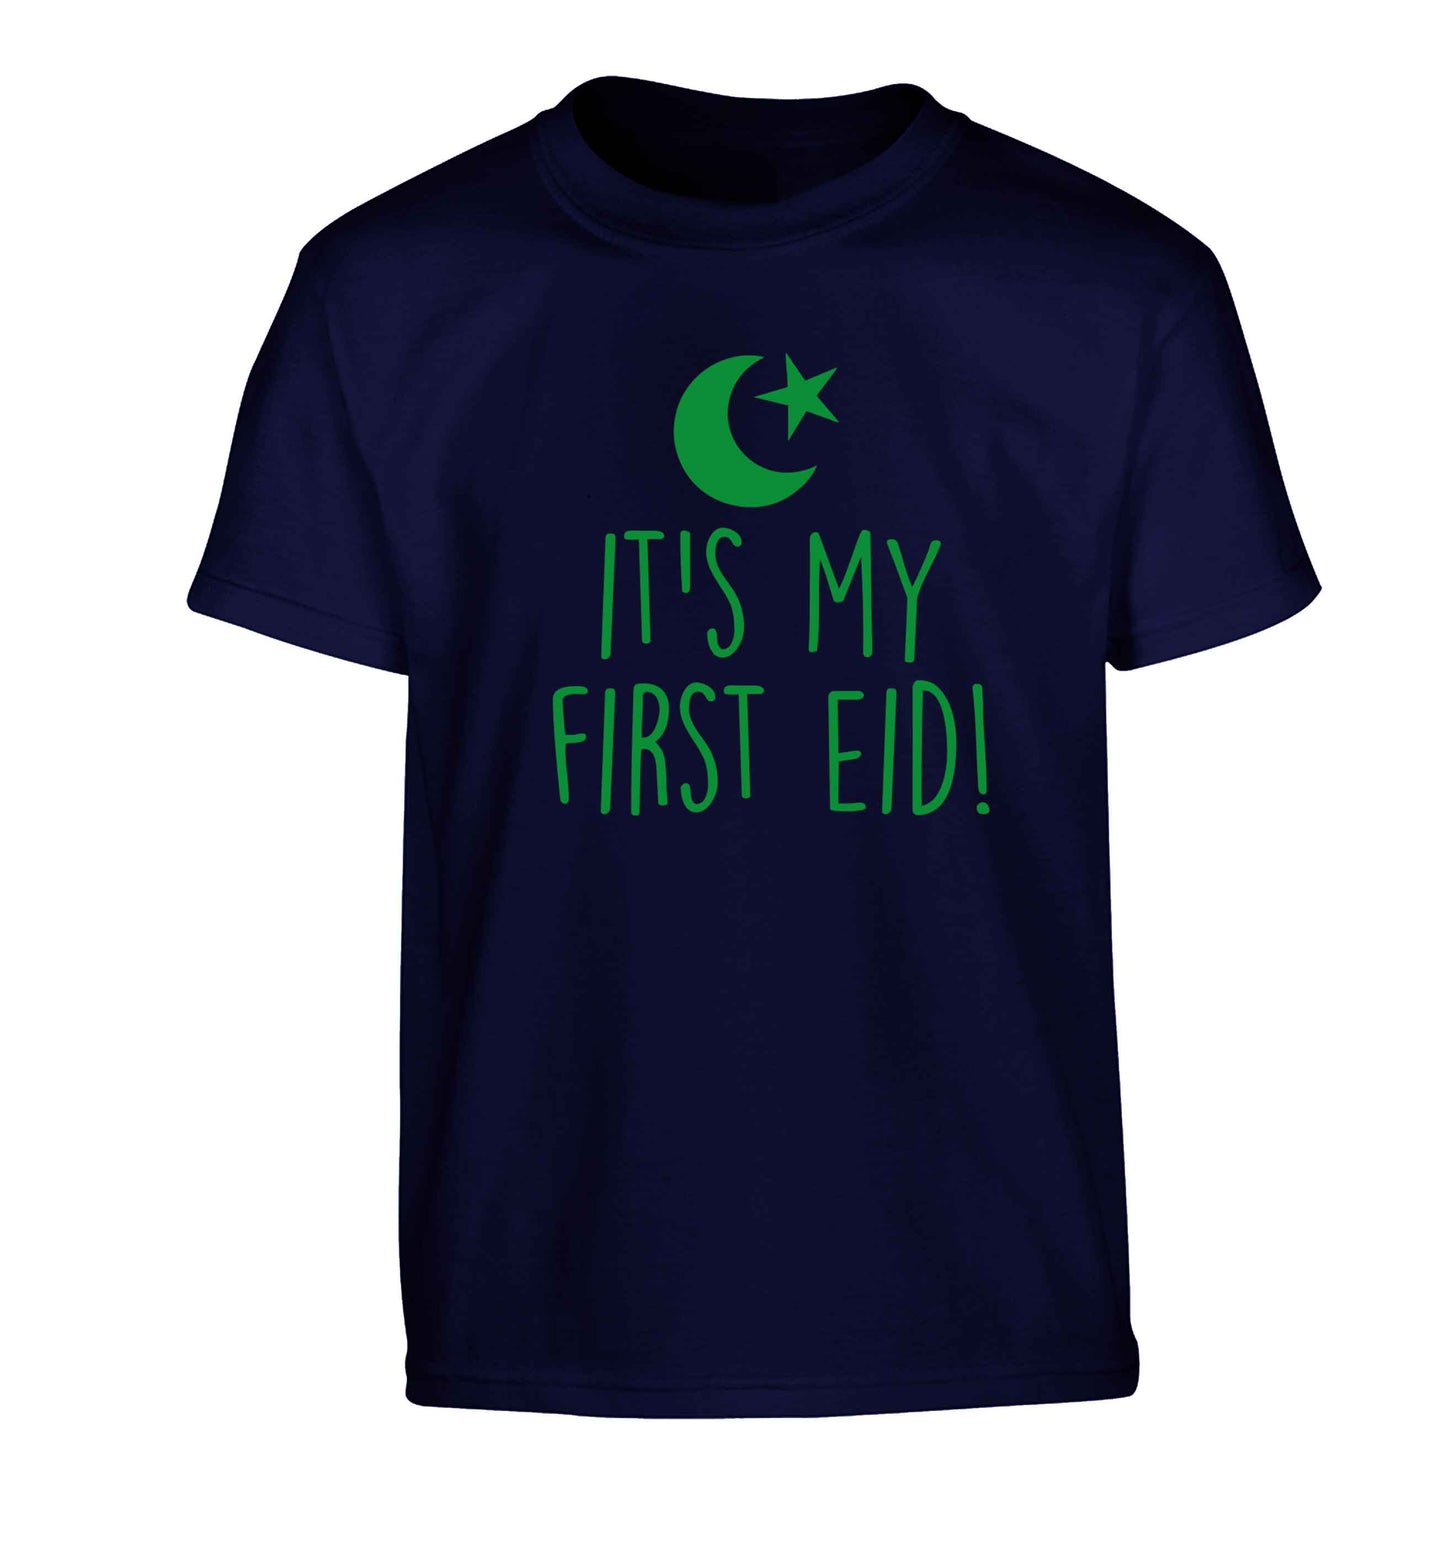 It's my first Eid Children's navy Tshirt 12-13 Years